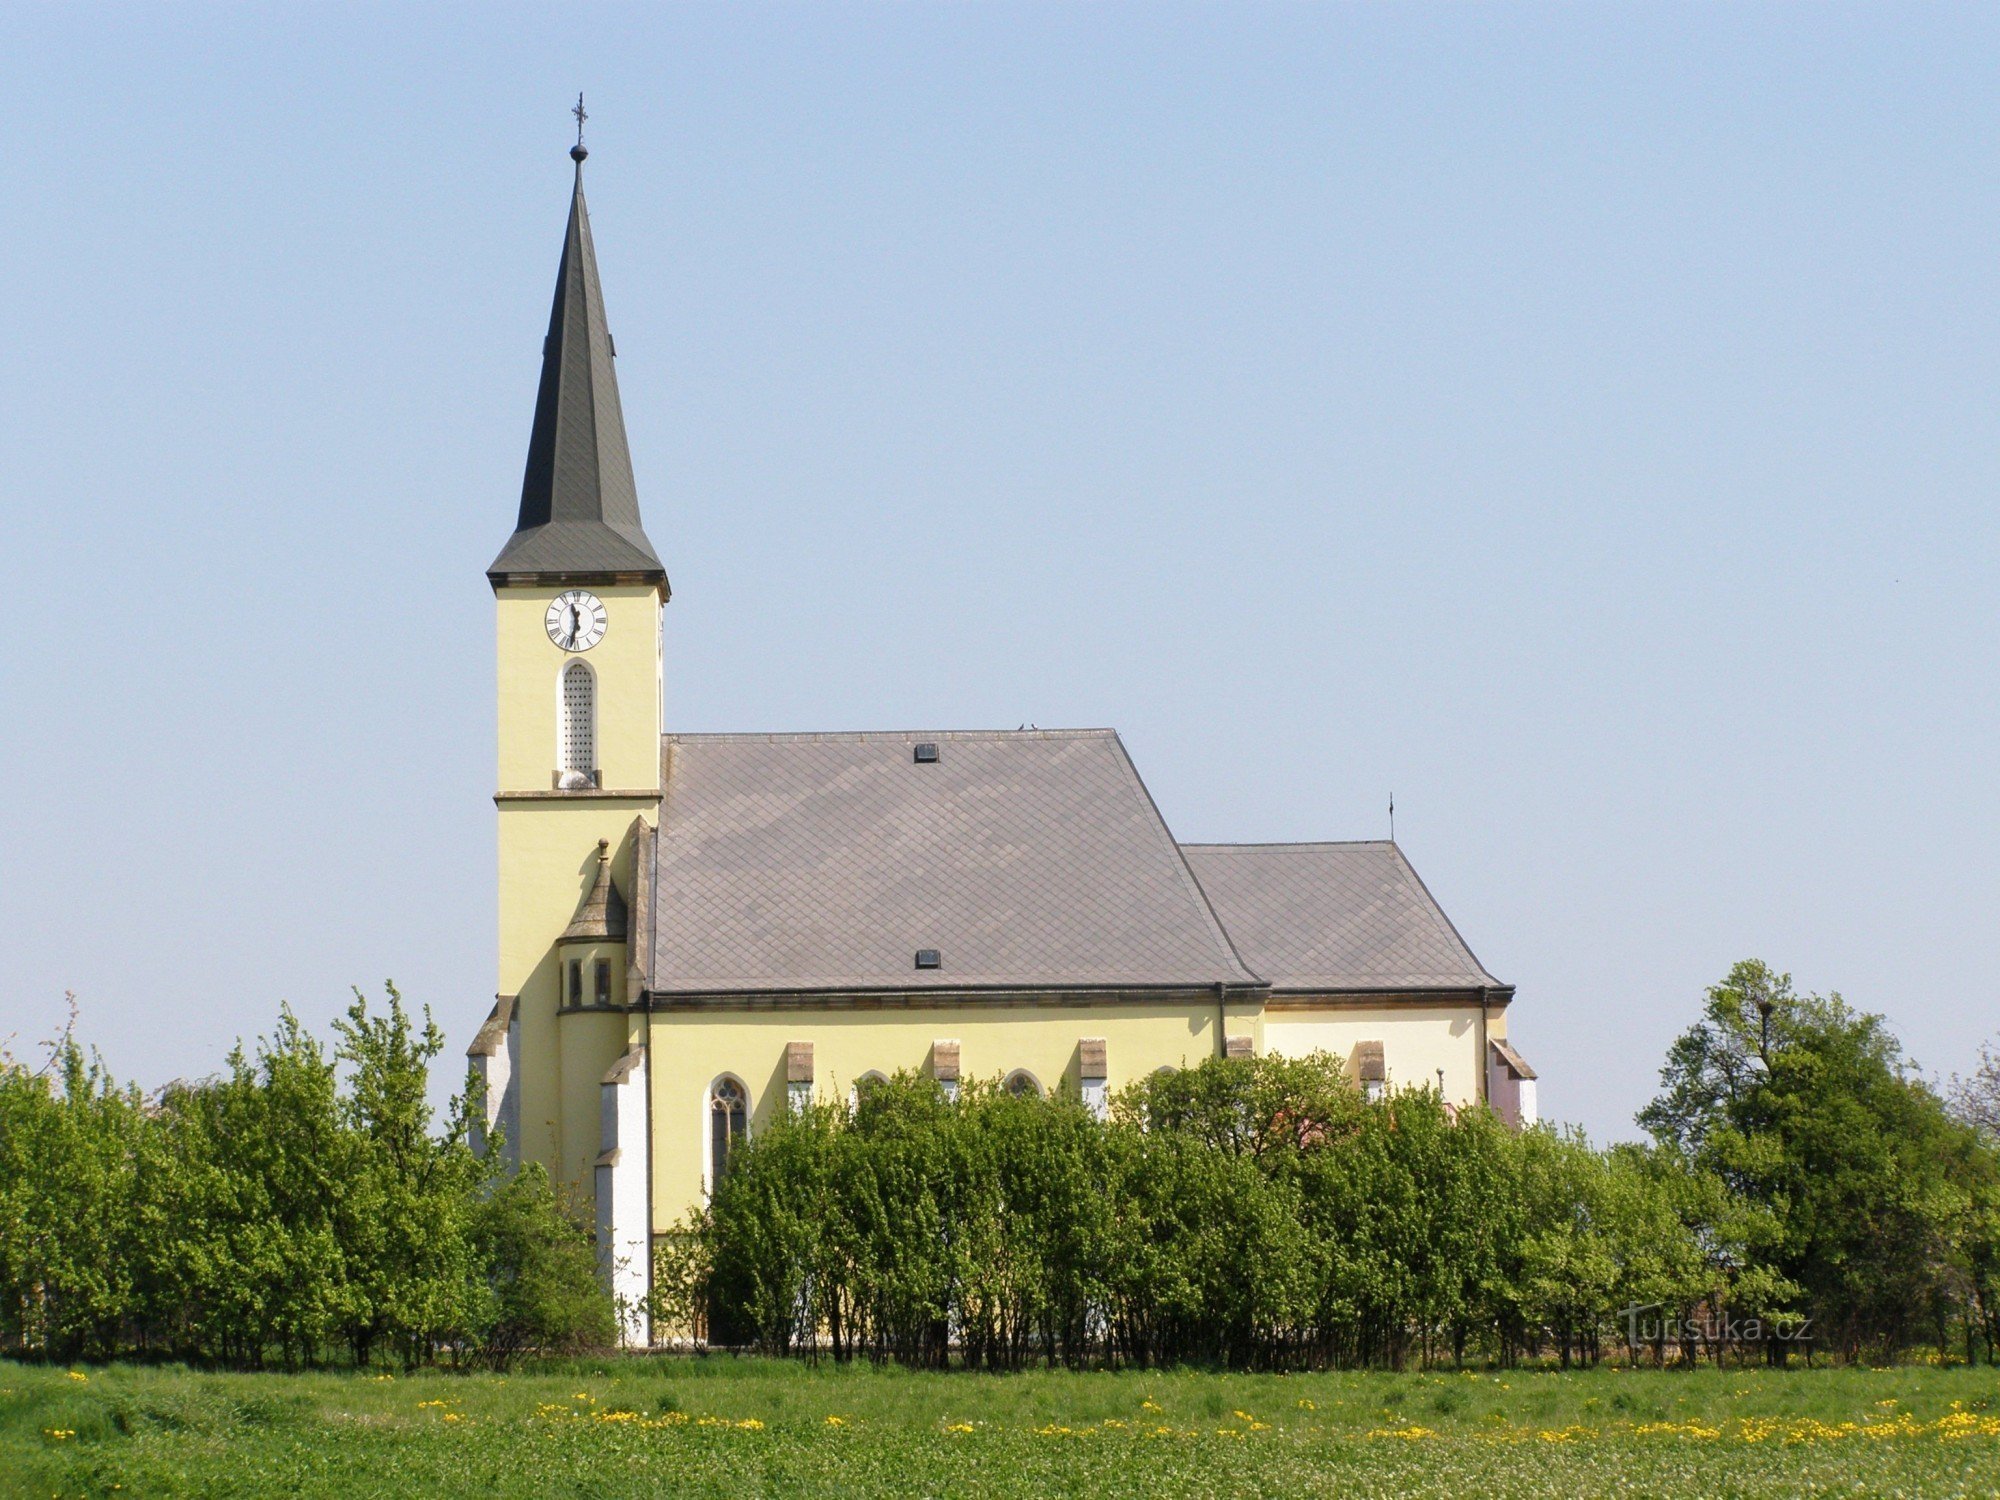 Dohalichy - Biserica Sf. Ioan Botezatorul